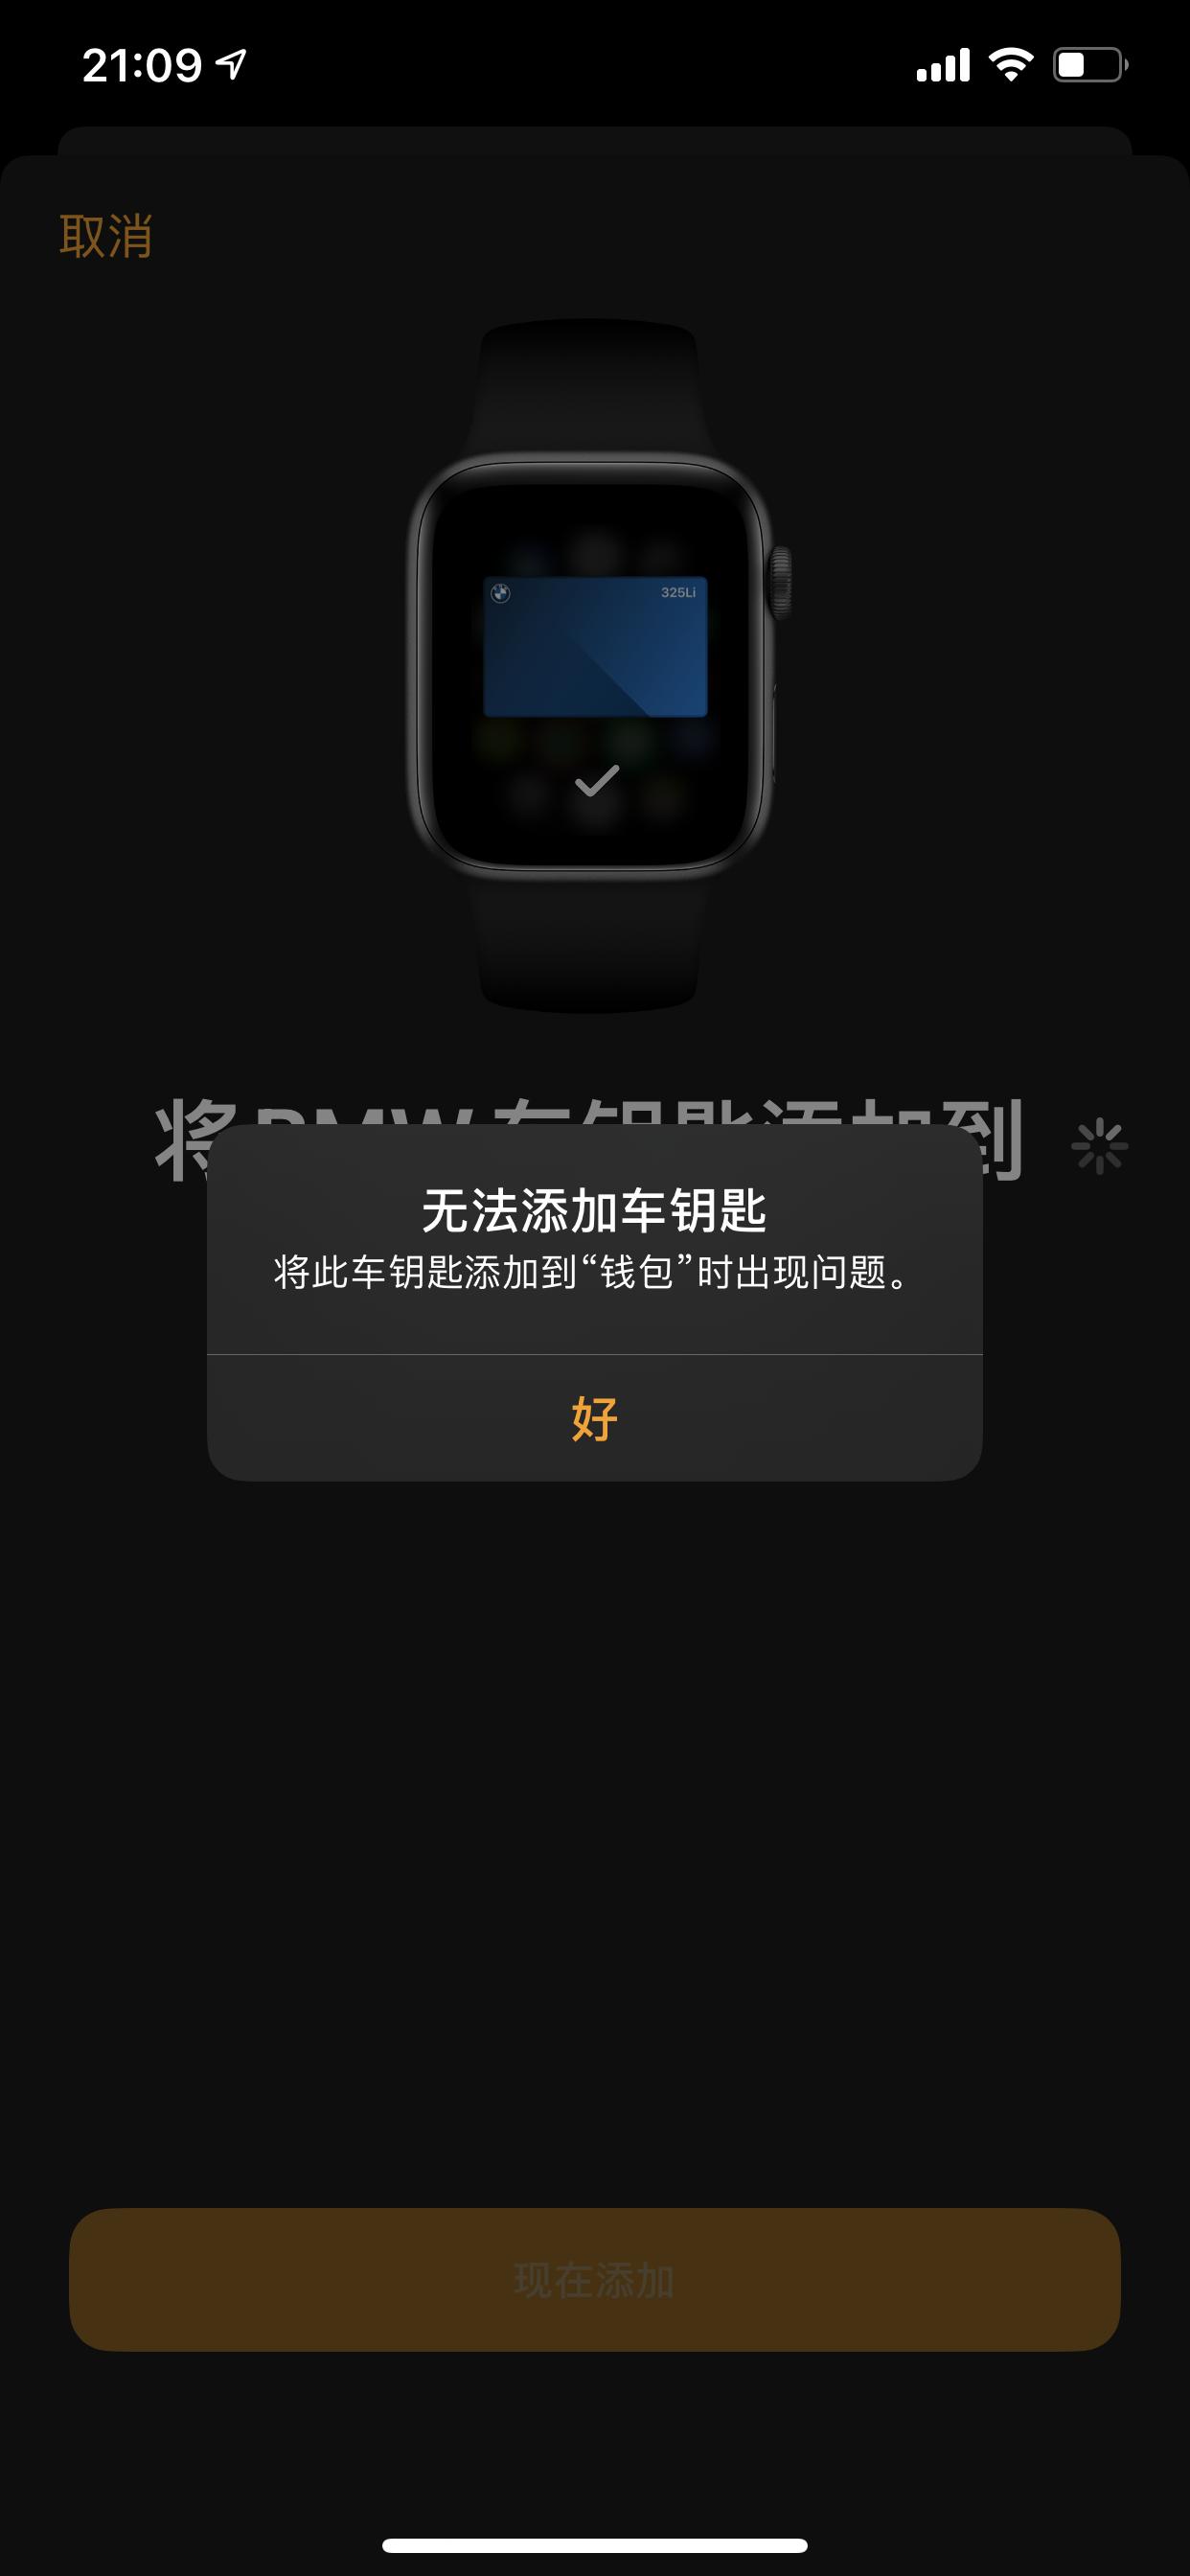 宝马3系 为何applepay数字钥匙没办法添加到手表上呀，试了好几次都不行